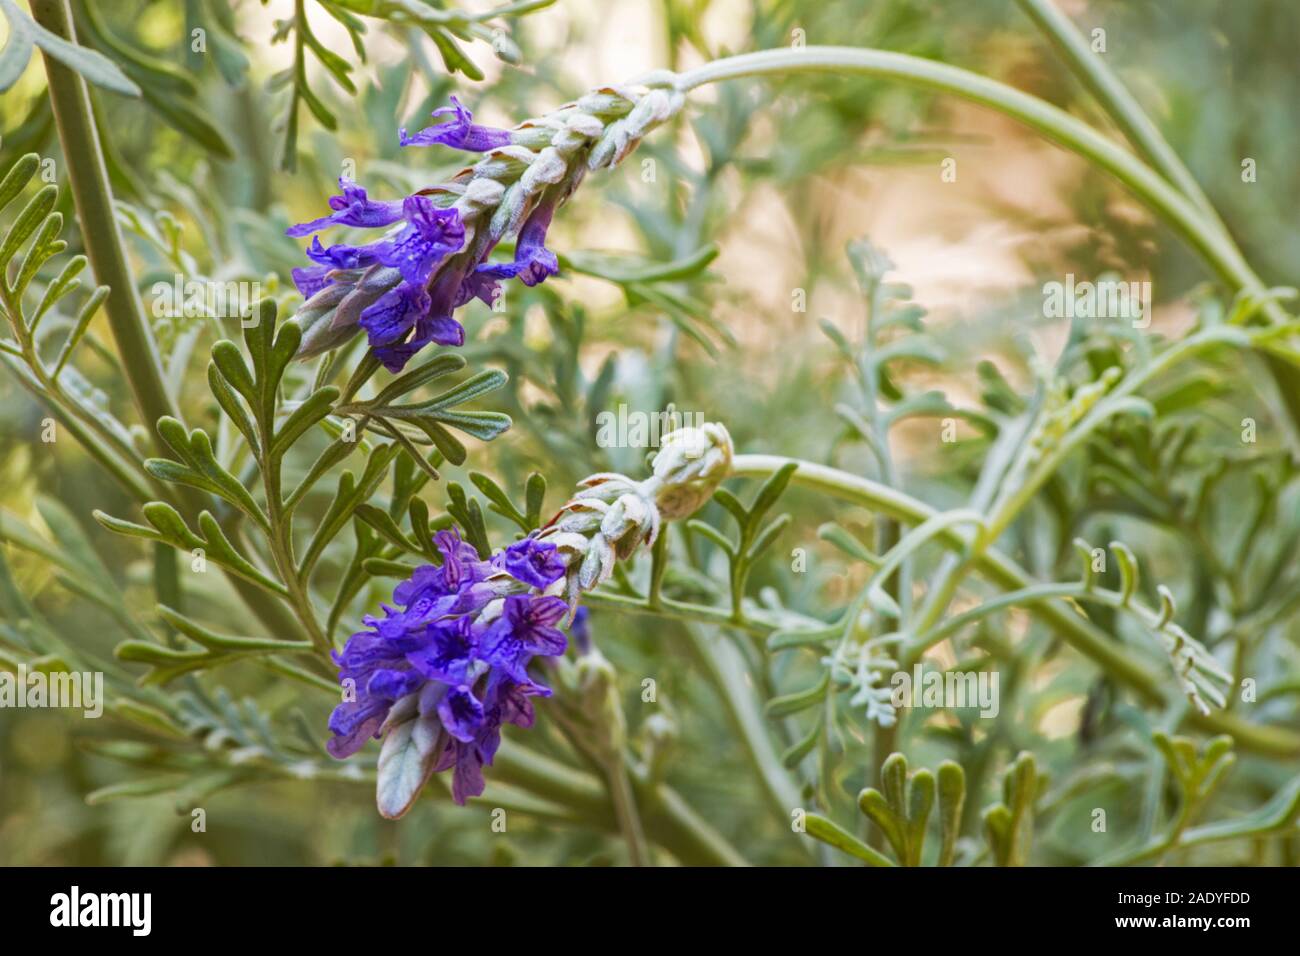 Fern leaf lavender on natural background Stock Photo